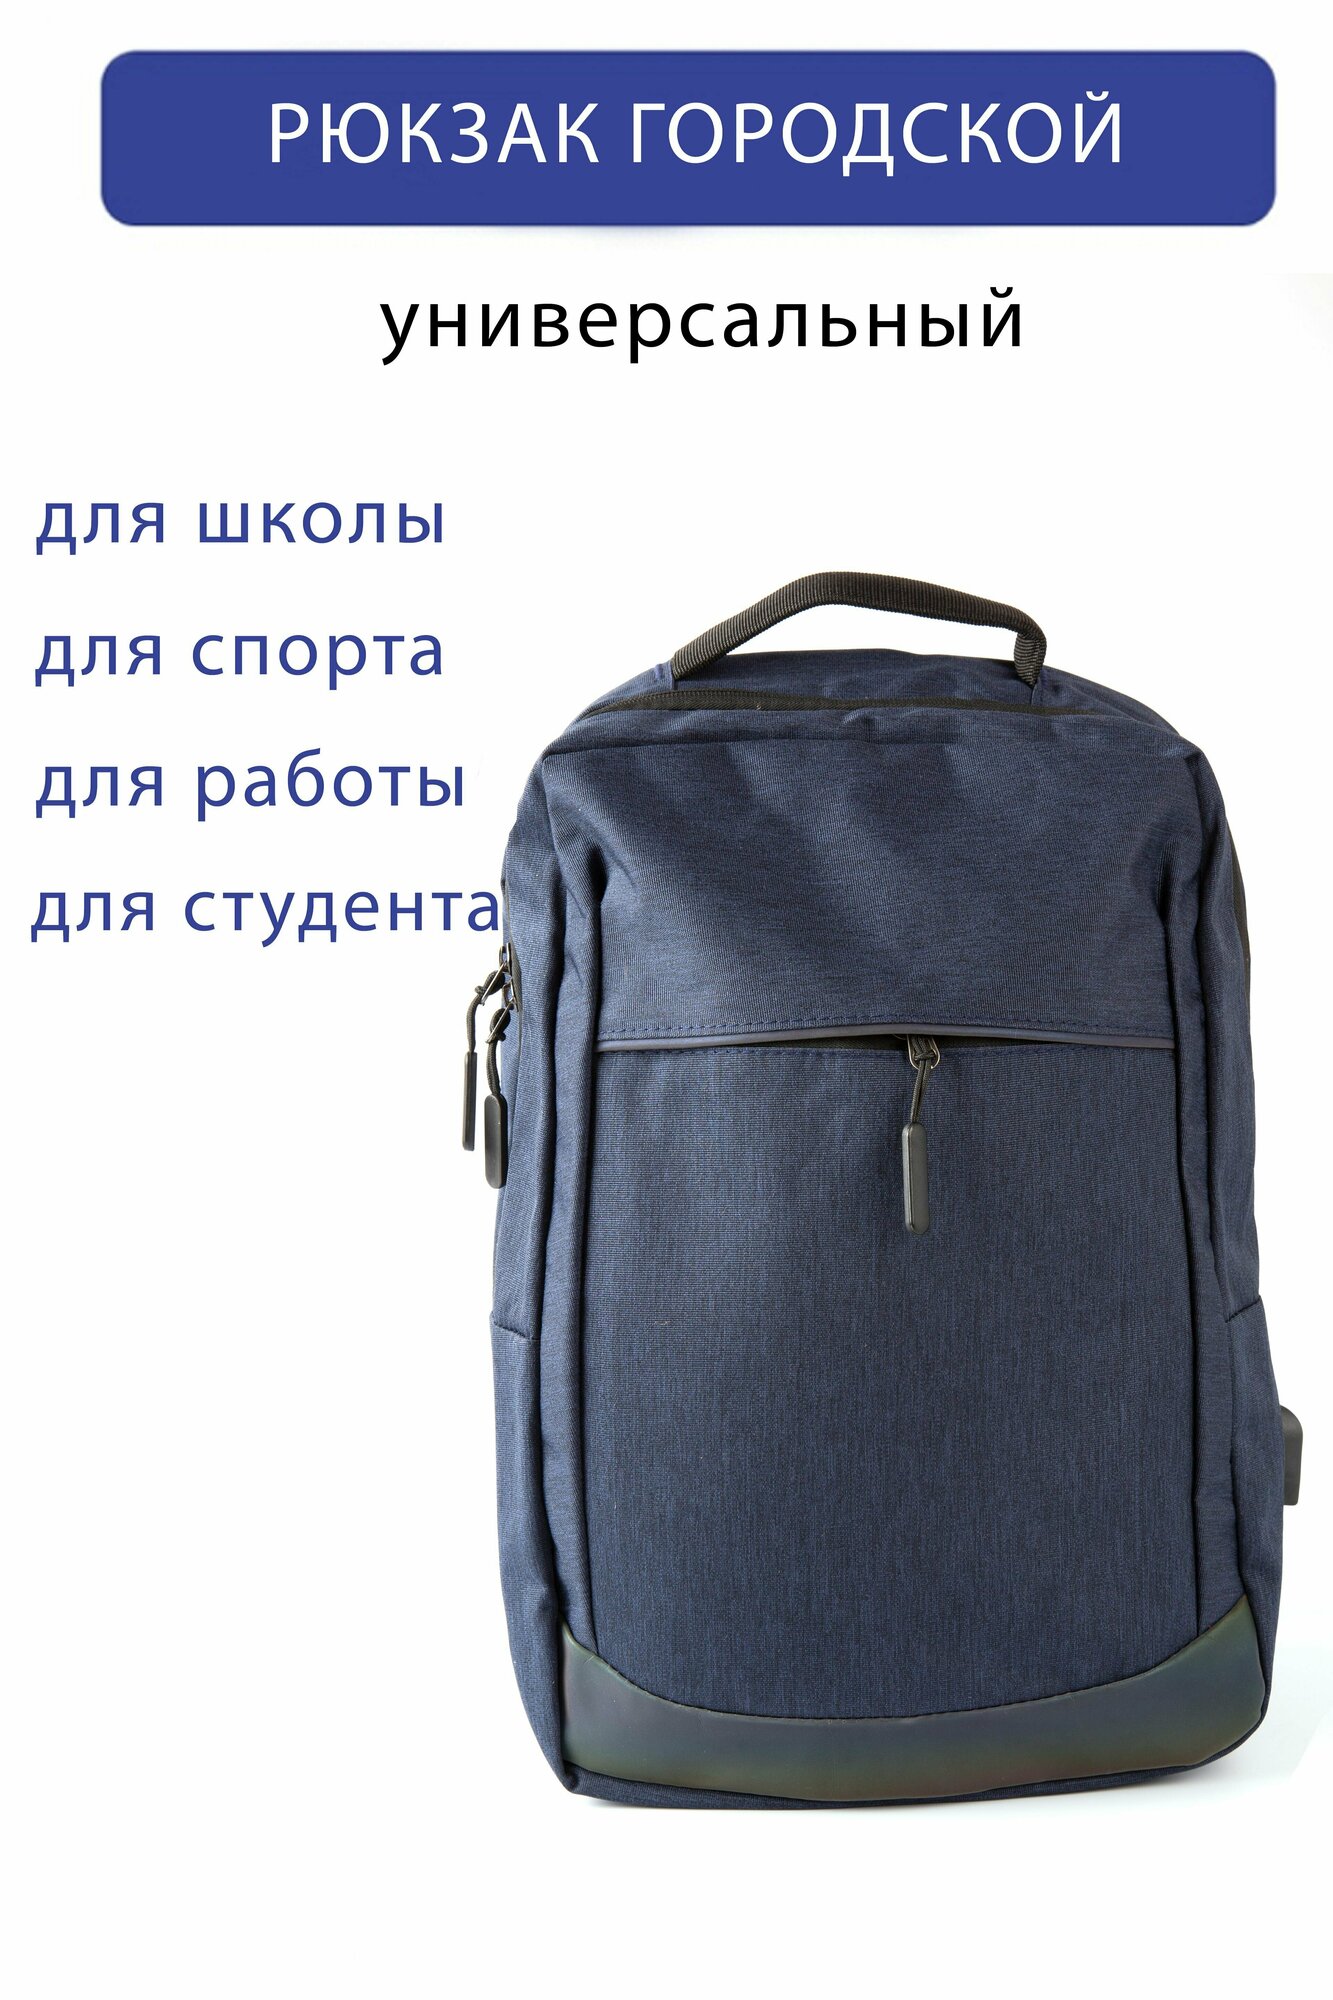 Рюкзак универсальный повседневный синий